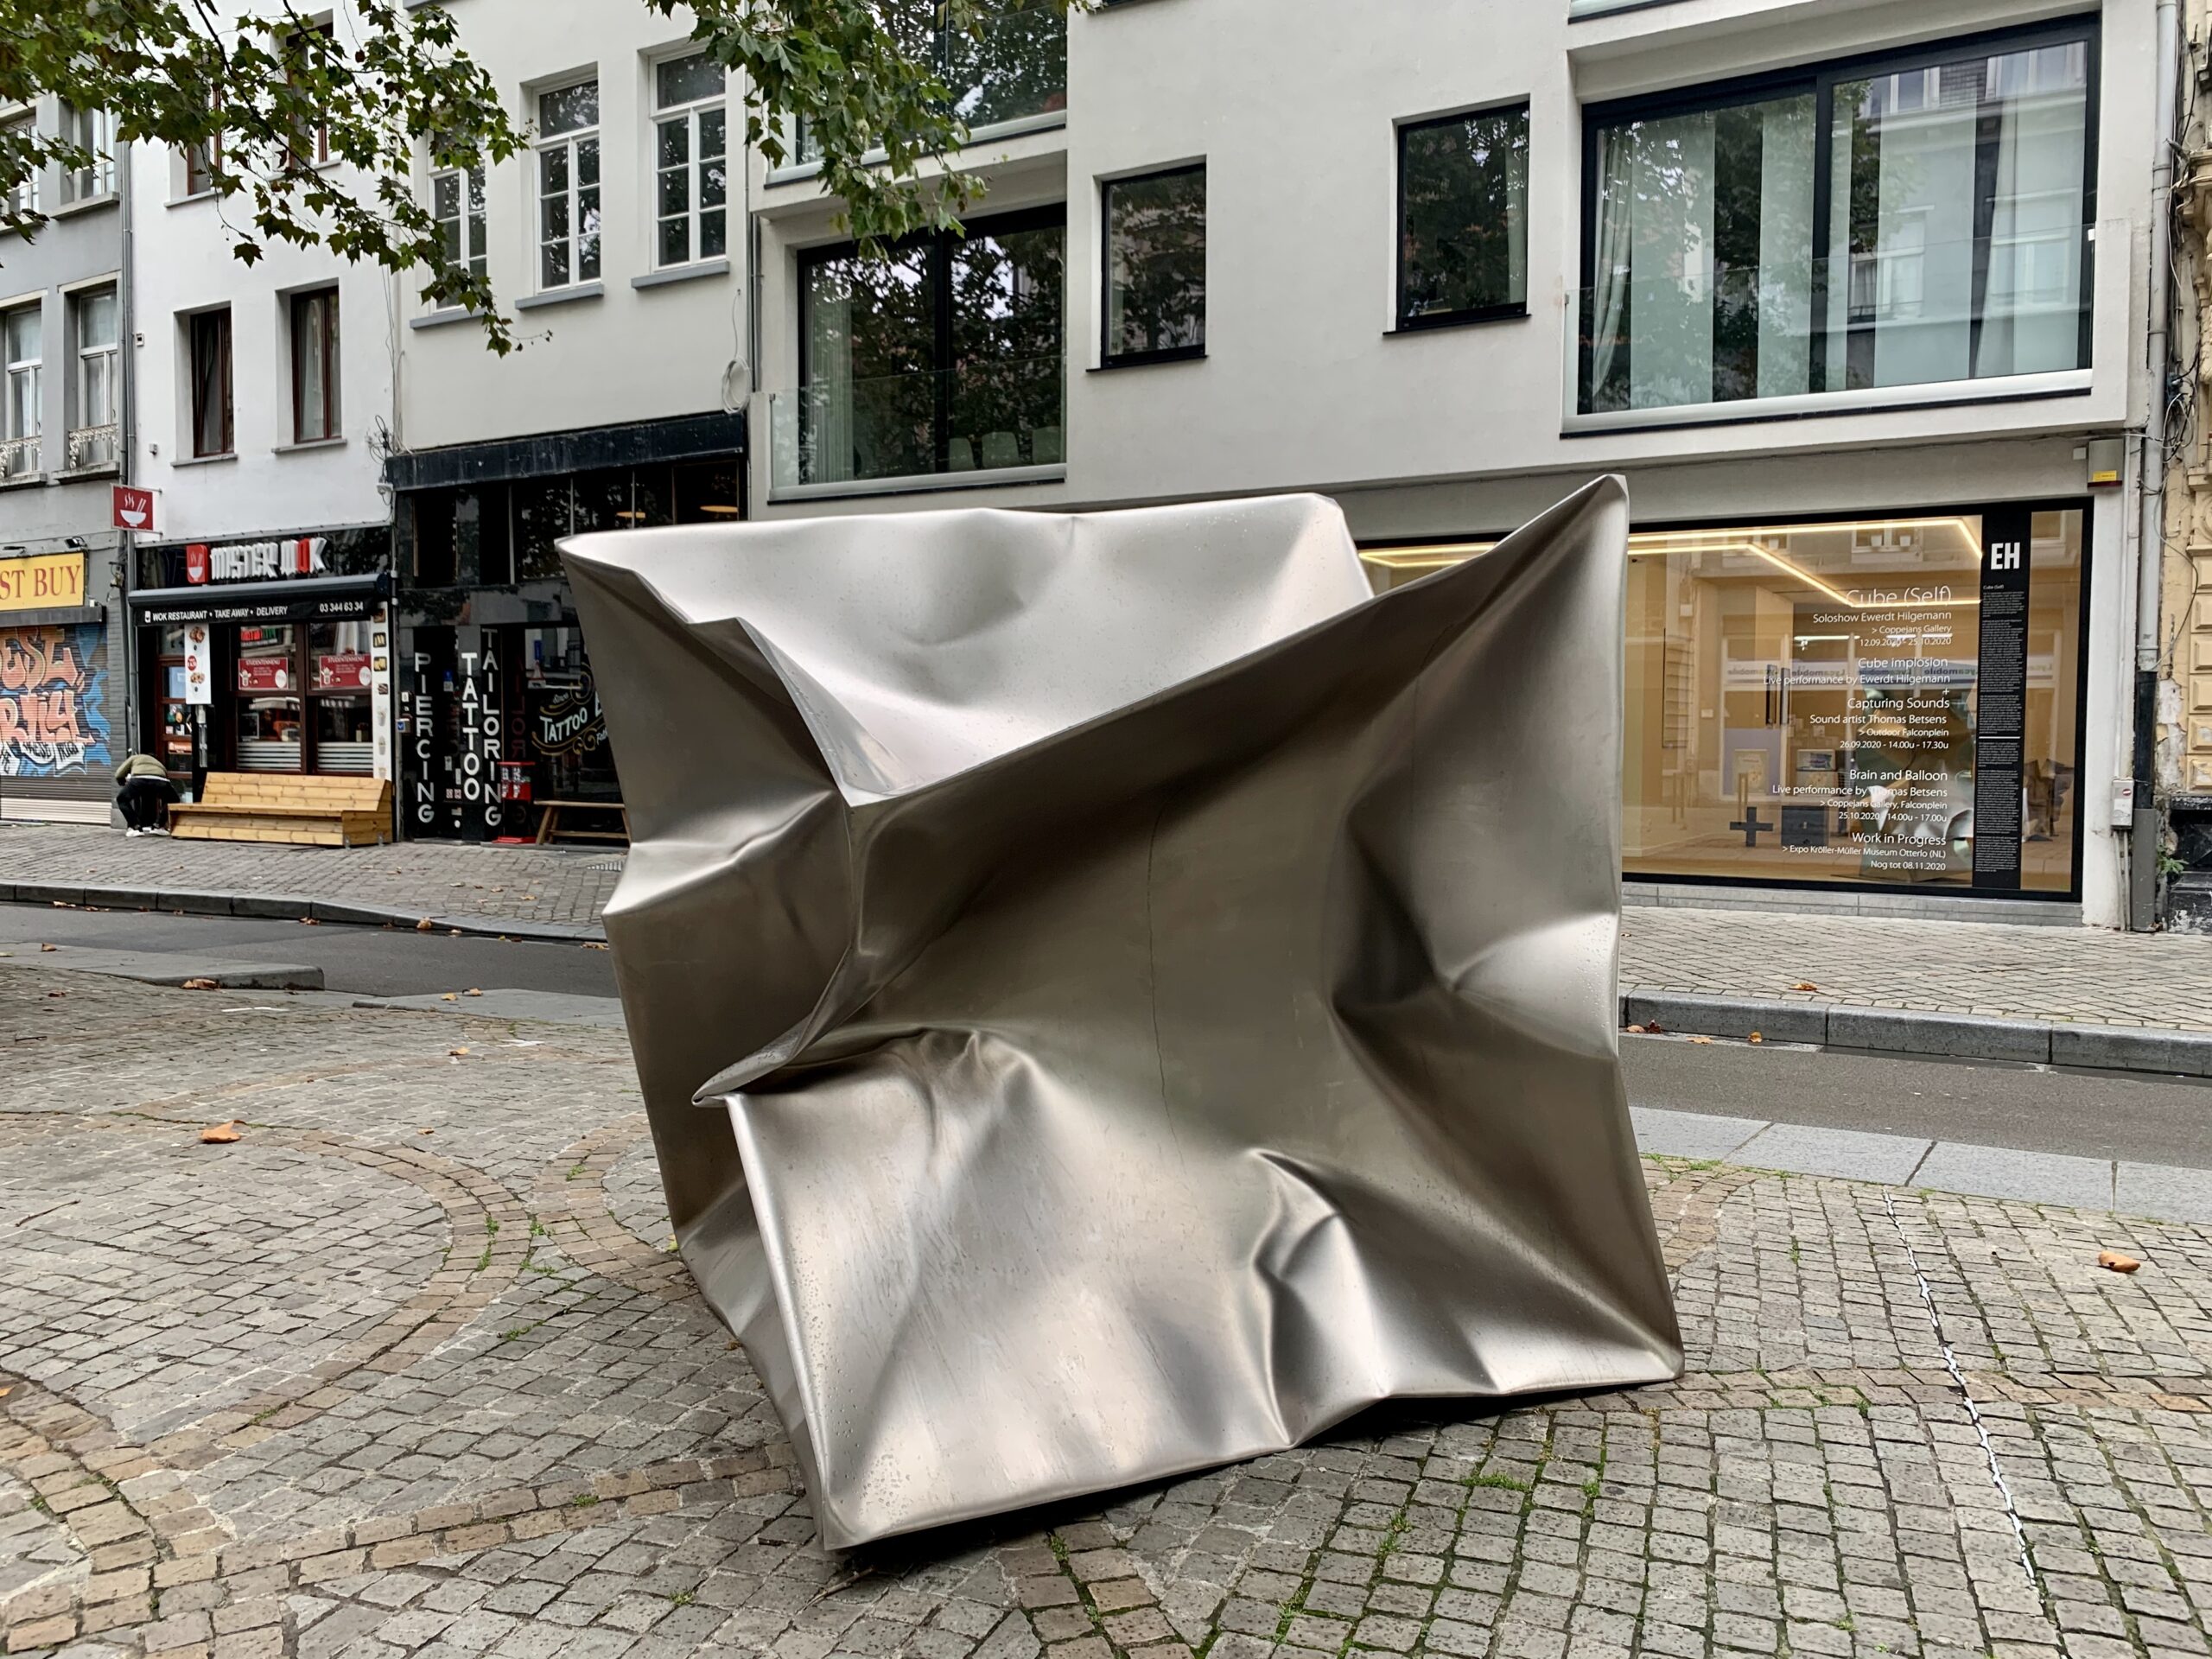 Ewerdt Hilgemann, Cube(Self), 2020